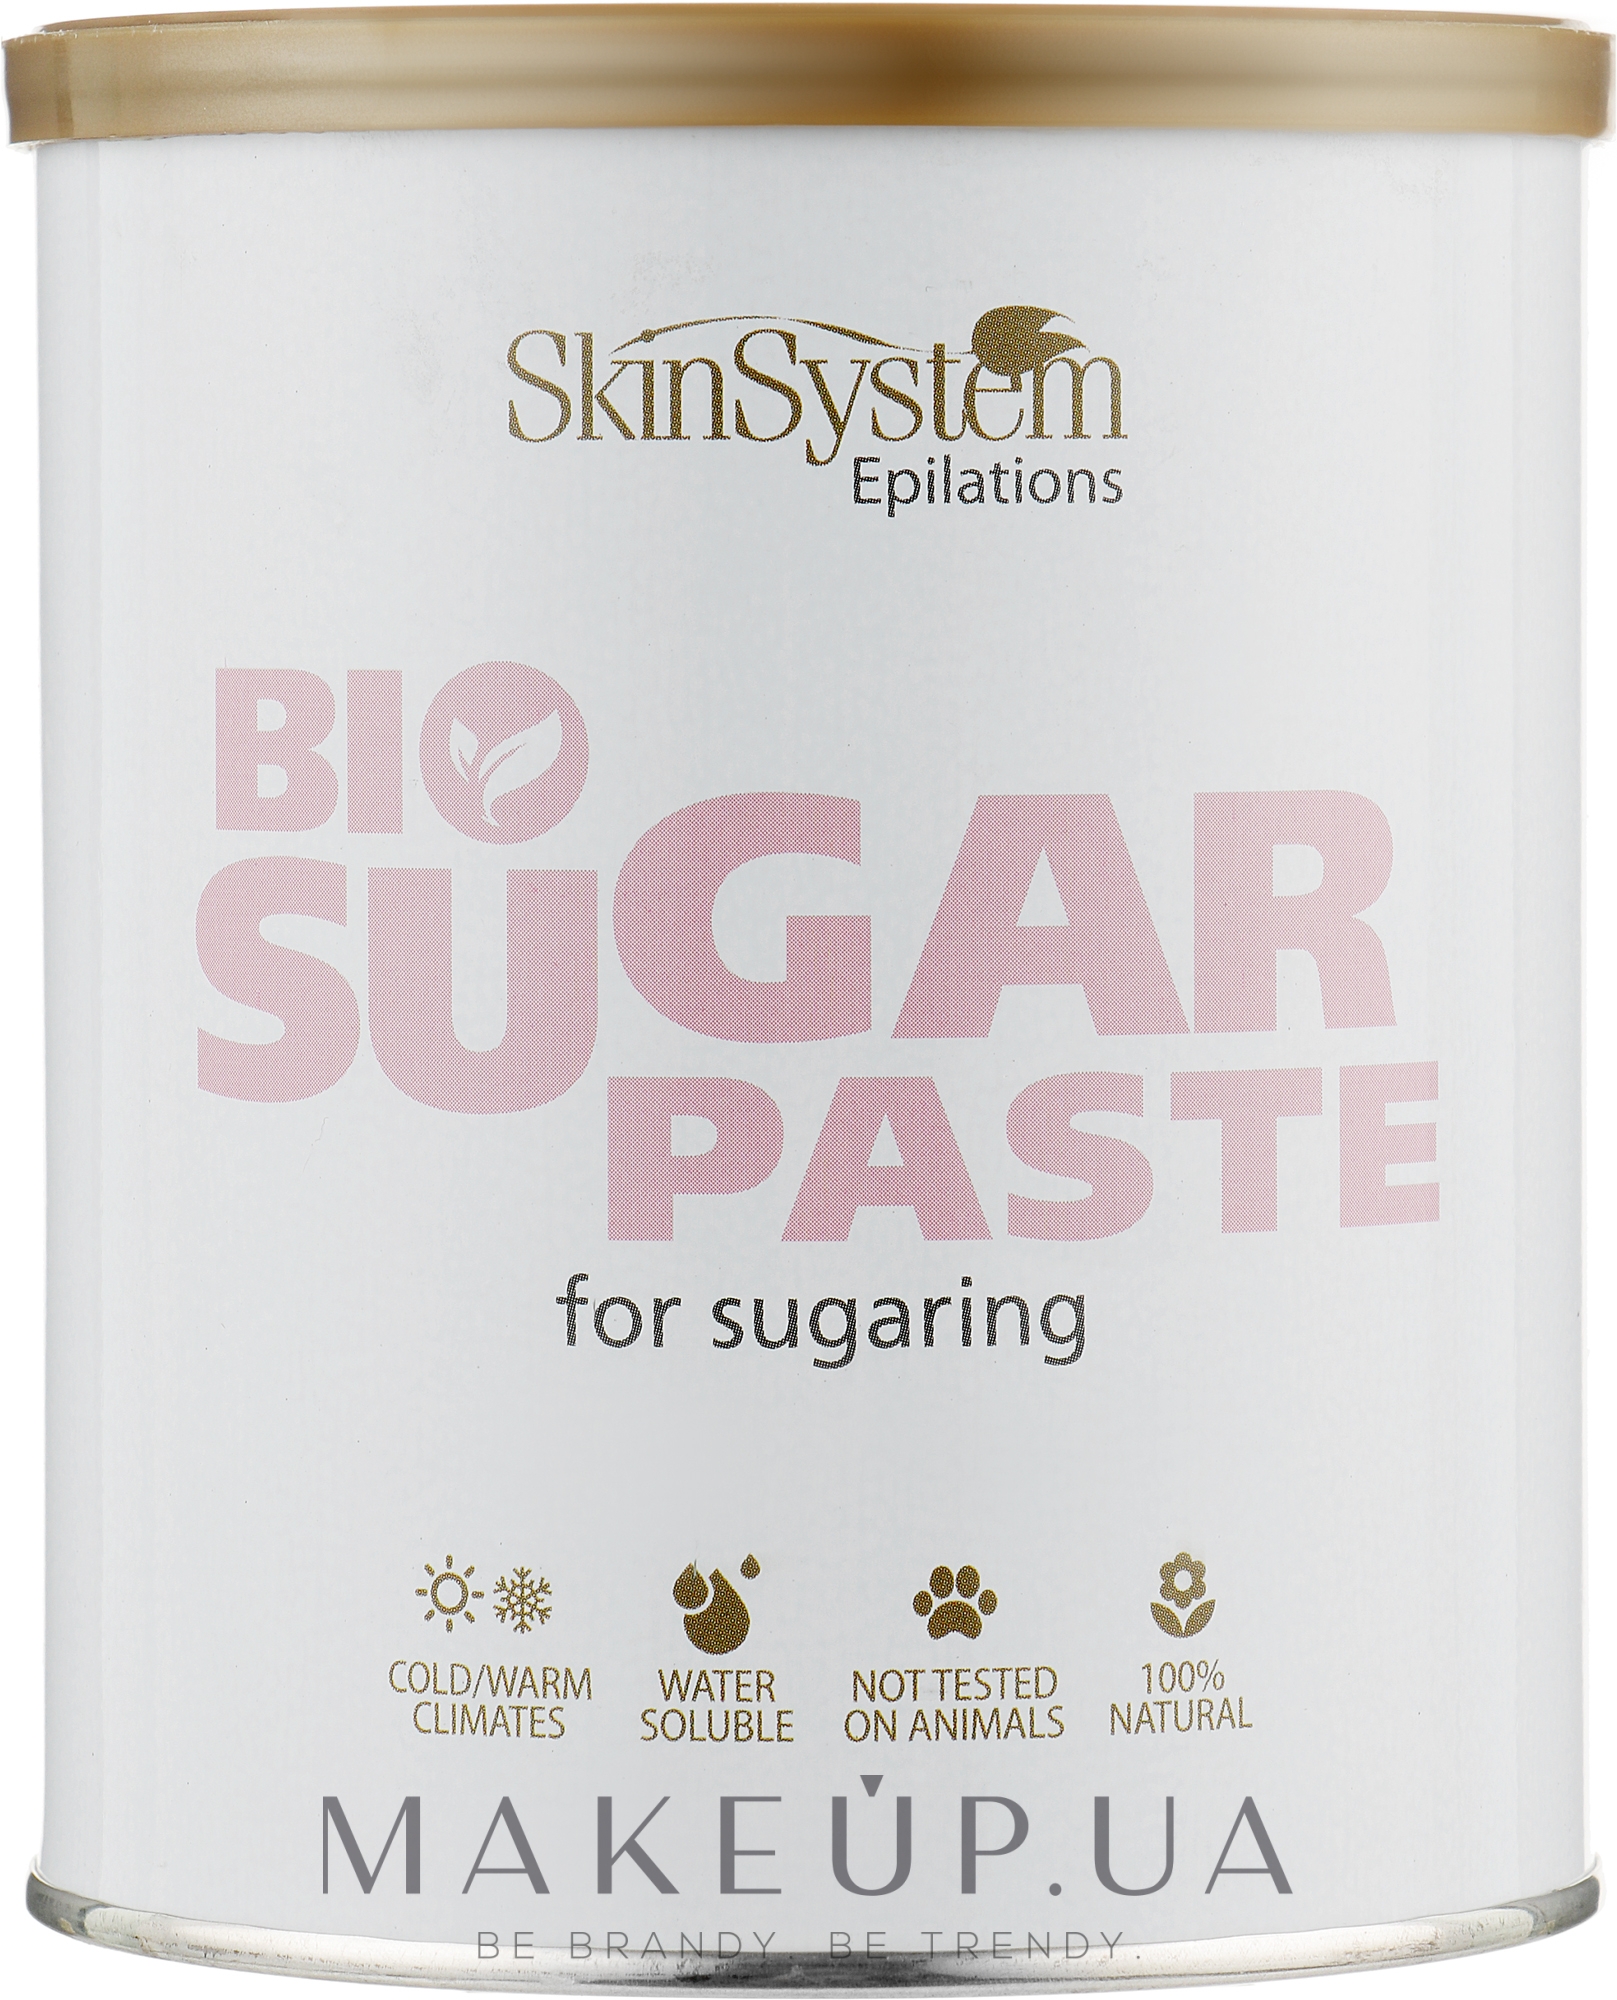 Сахарная паста для депиляции, средней жесткости, без разогрева - Skin System Bio Sugar Paste Medium — фото 1100g